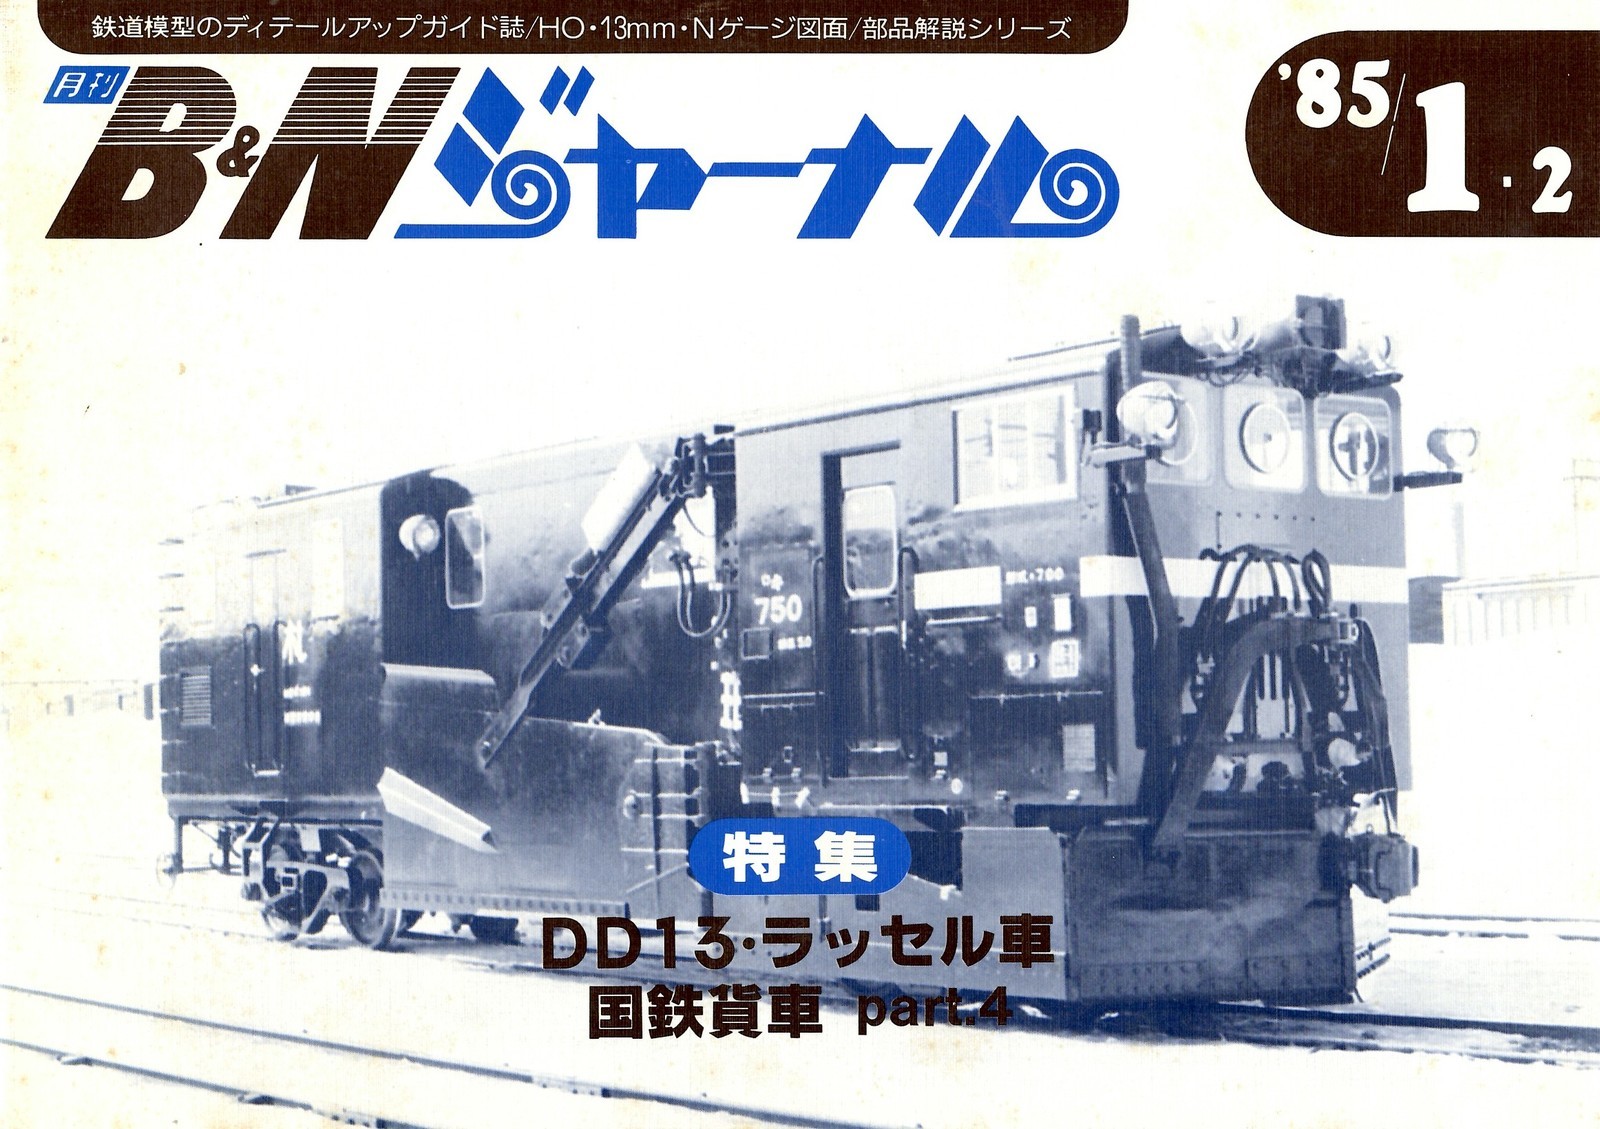 月刊b Nジャーナル 鉄道模型資料室